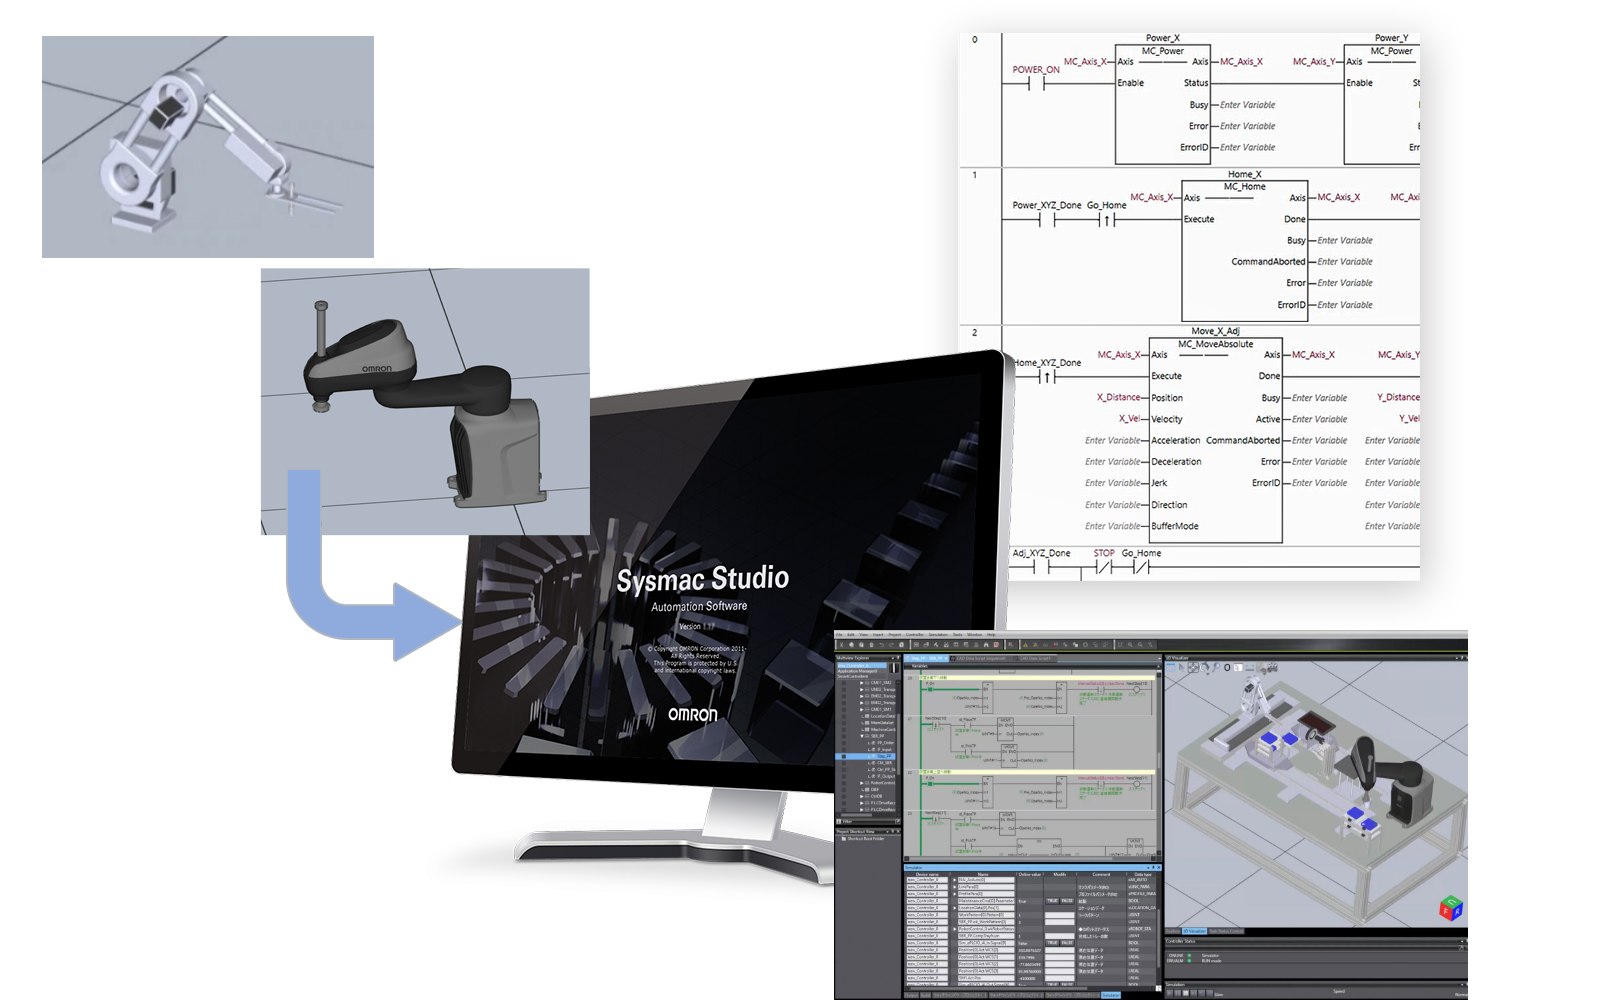 オムロン、シミュレーションソフト「Sysmac Studio」に新機能「ワーク動作設定の簡易化」を追加